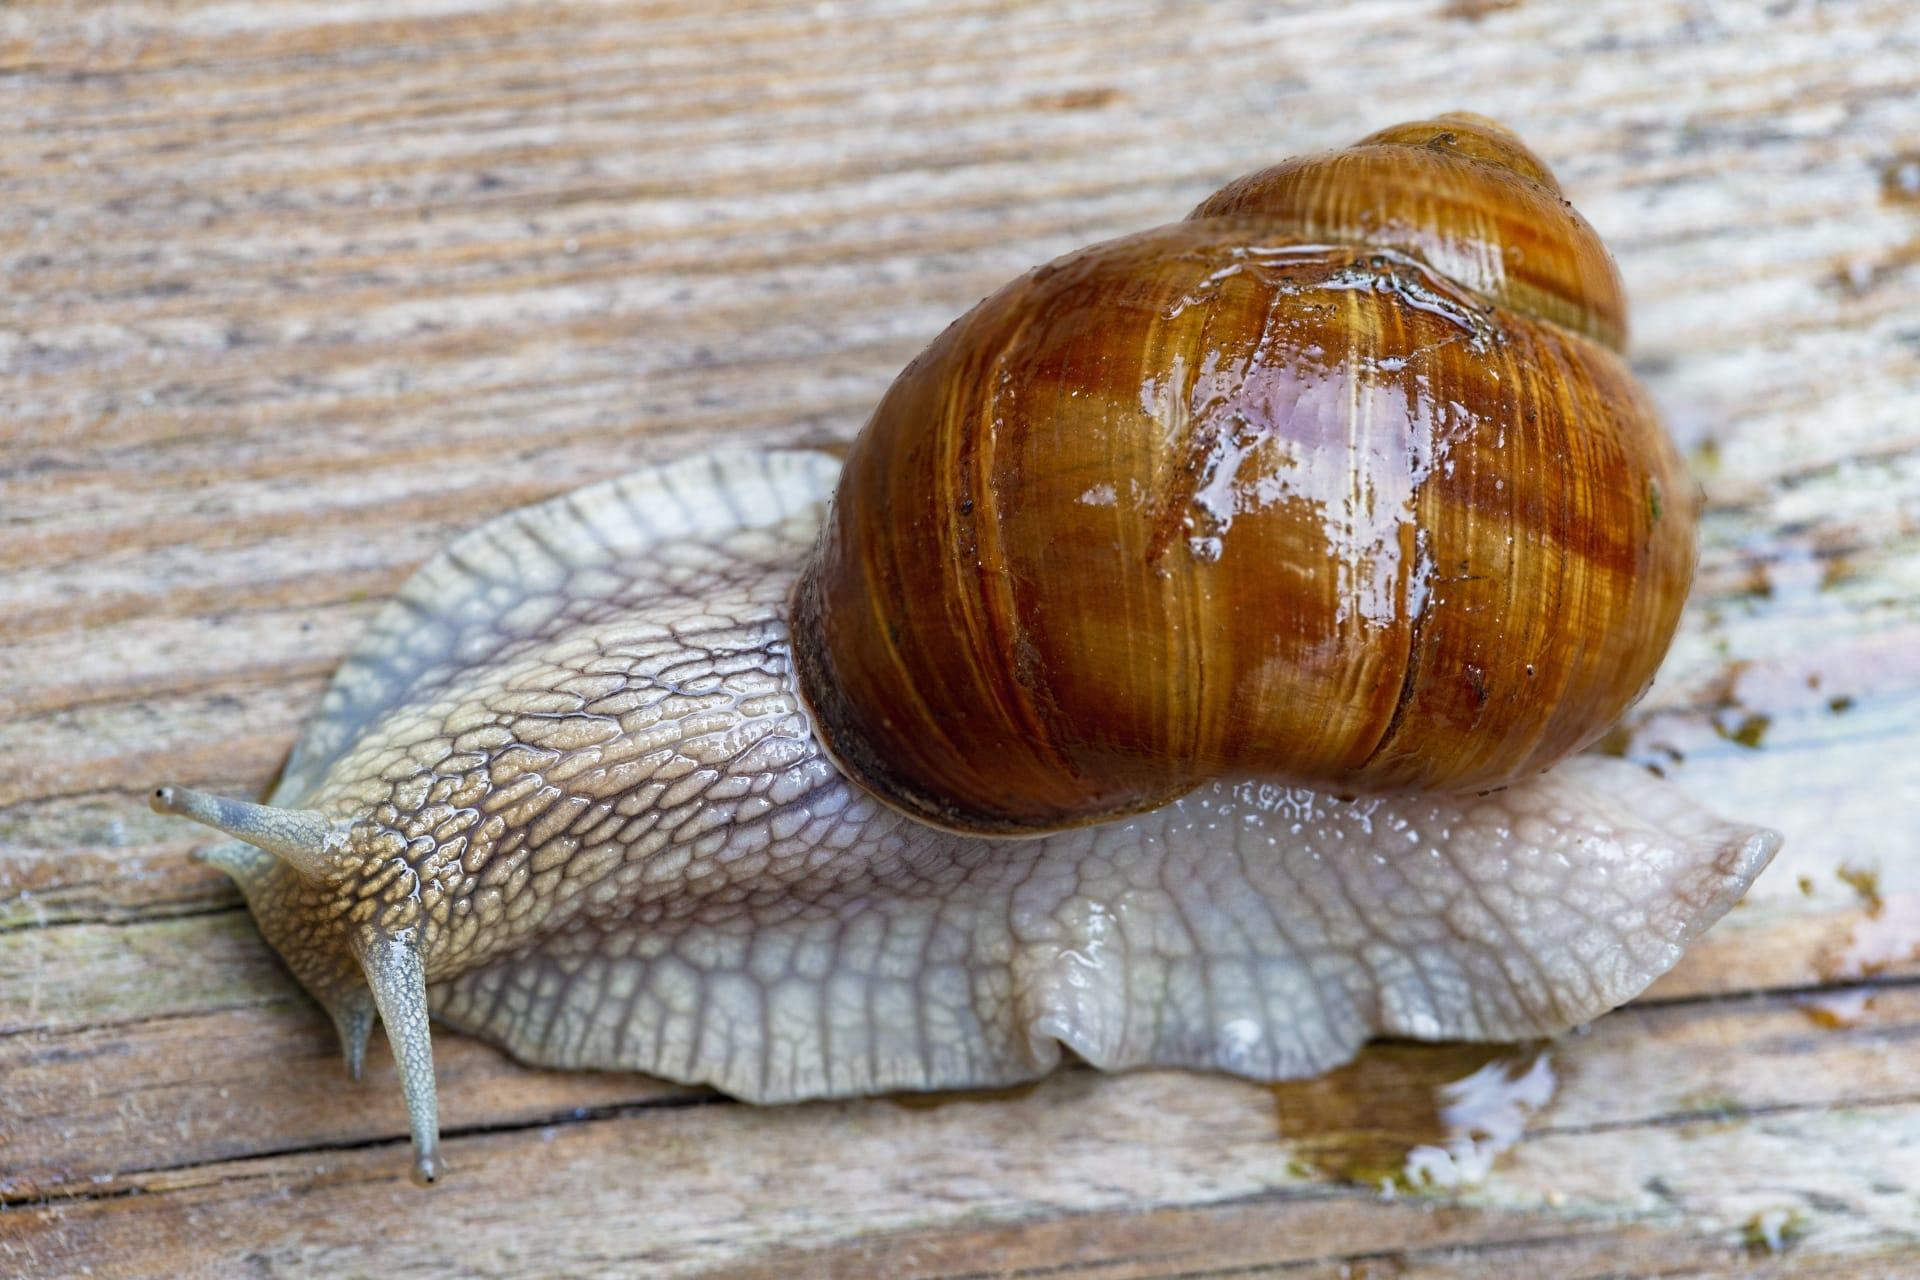 Snails pictures